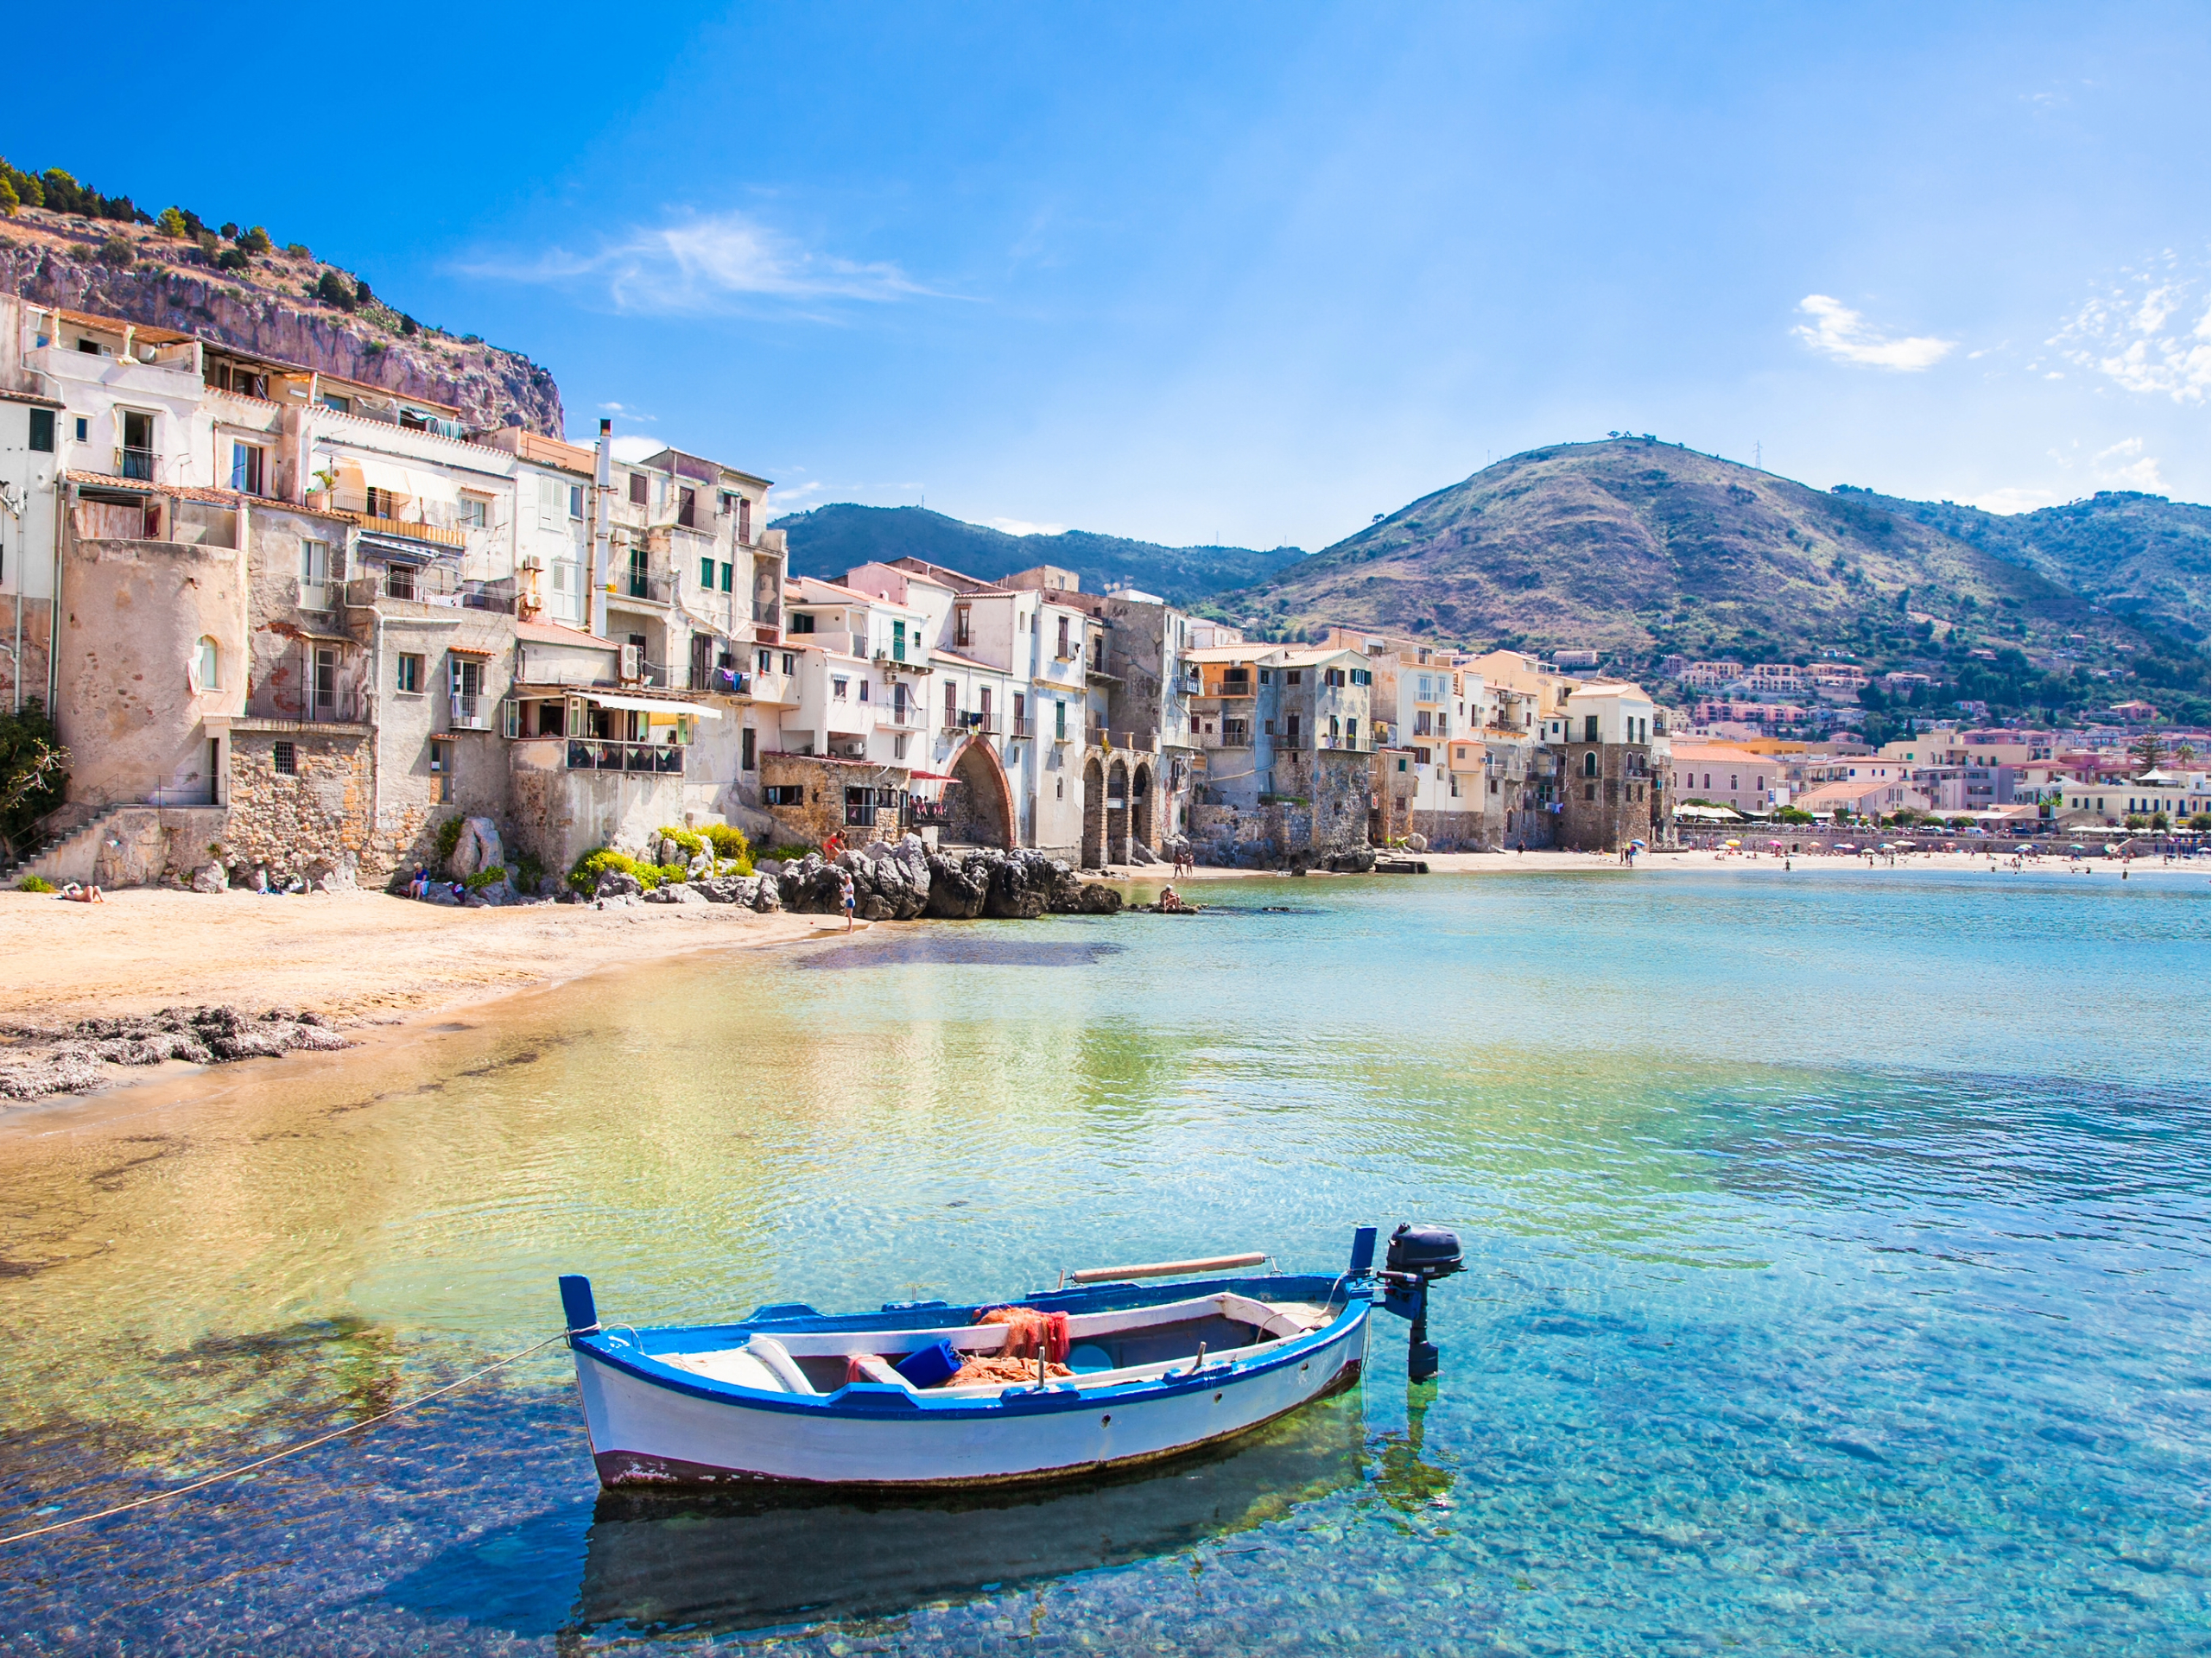 Europa bajo el calor extremo análisis de la OMM sobre temperatura récord en Sicilia